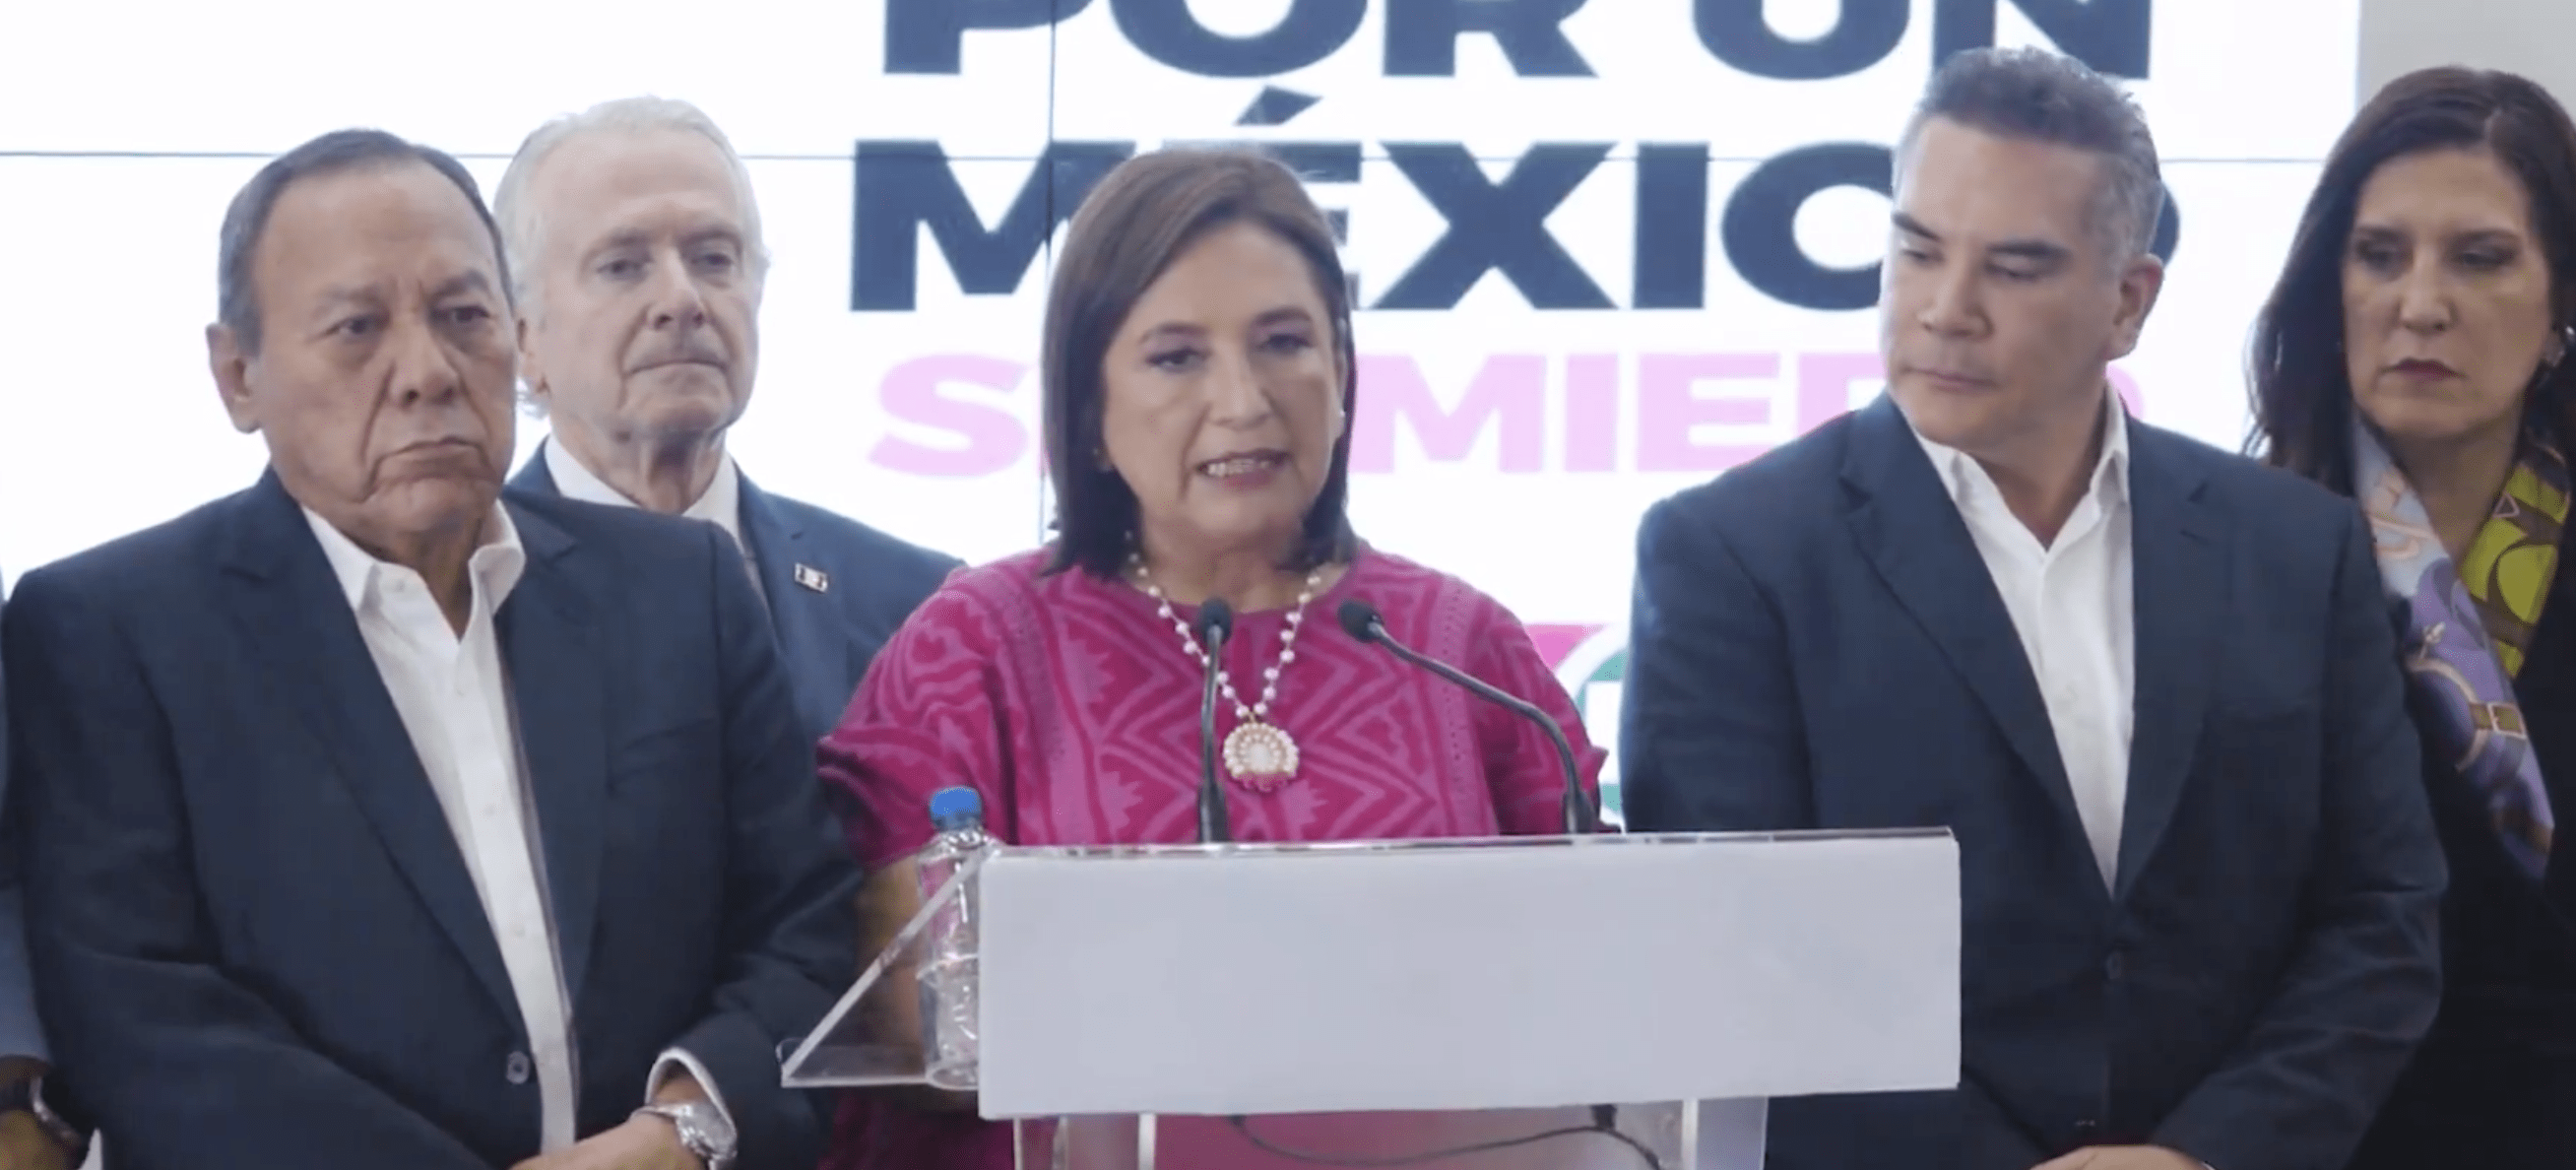 Noticias de Actualidad de México y el Mundo -